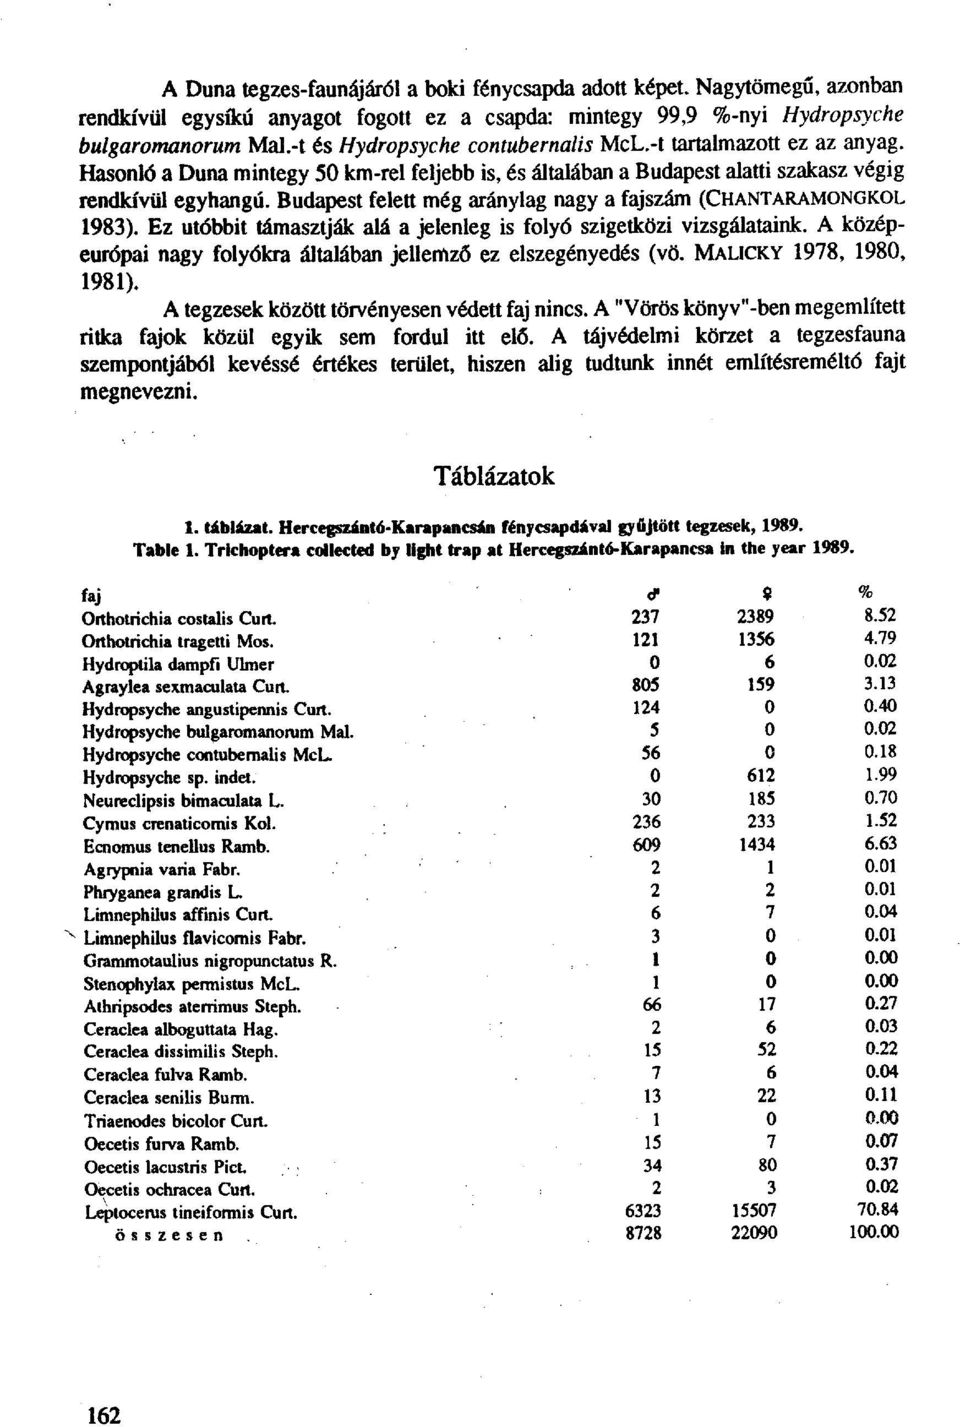 Budapest felett még aránylag nagy a fajszám (CHANTARAMONGKOL 1983). Ez utóbbit támasztják alá a jelenleg is folyó szigetközi vizsgálataink.